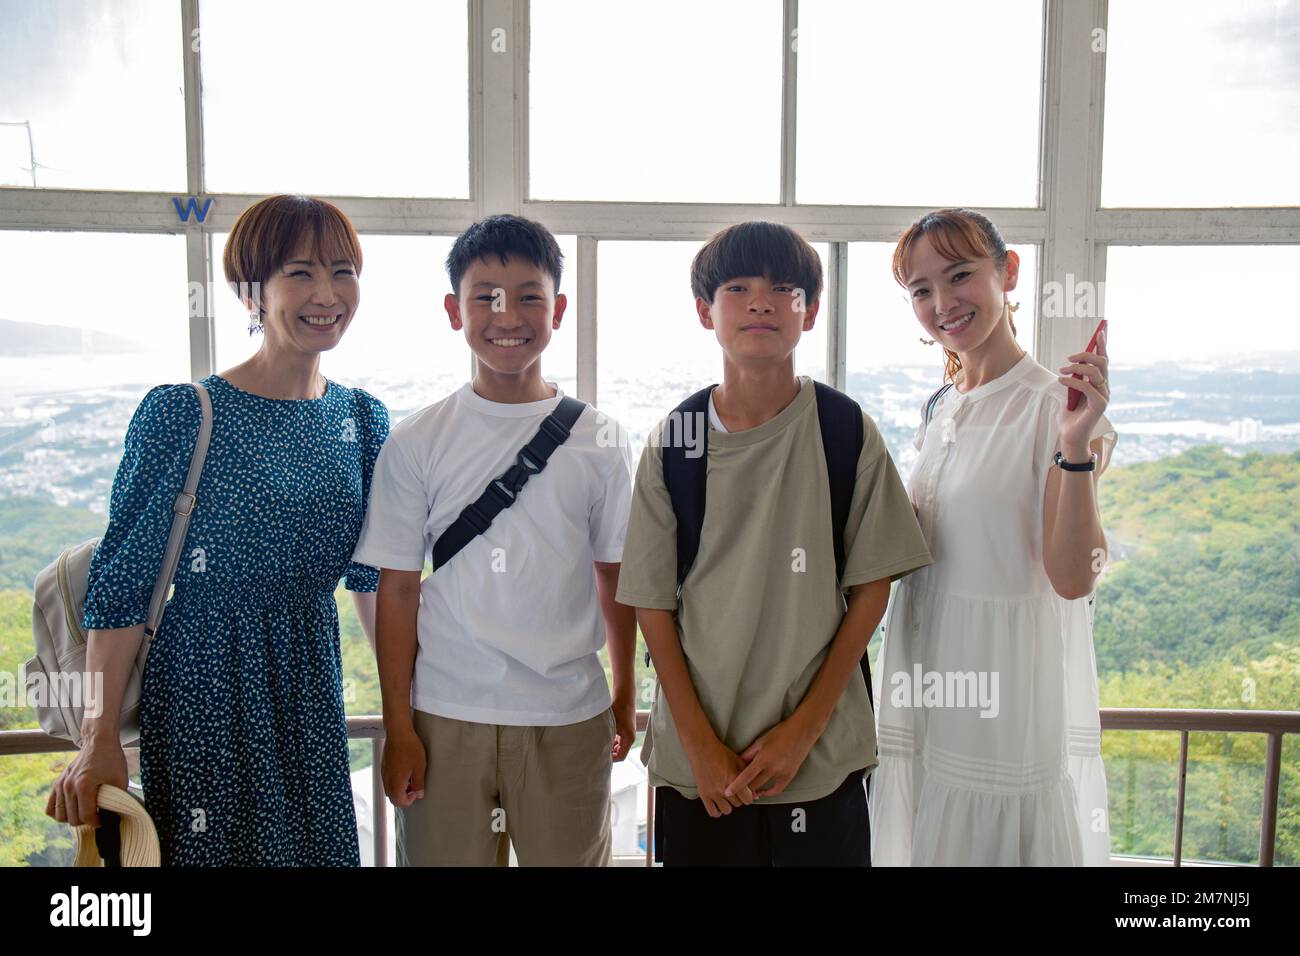 Cuatro japoneses, dos niños y dos mujeres maduras en un día, posando para una fotografía, lado a lado, en una plataforma de observación. Foto de stock